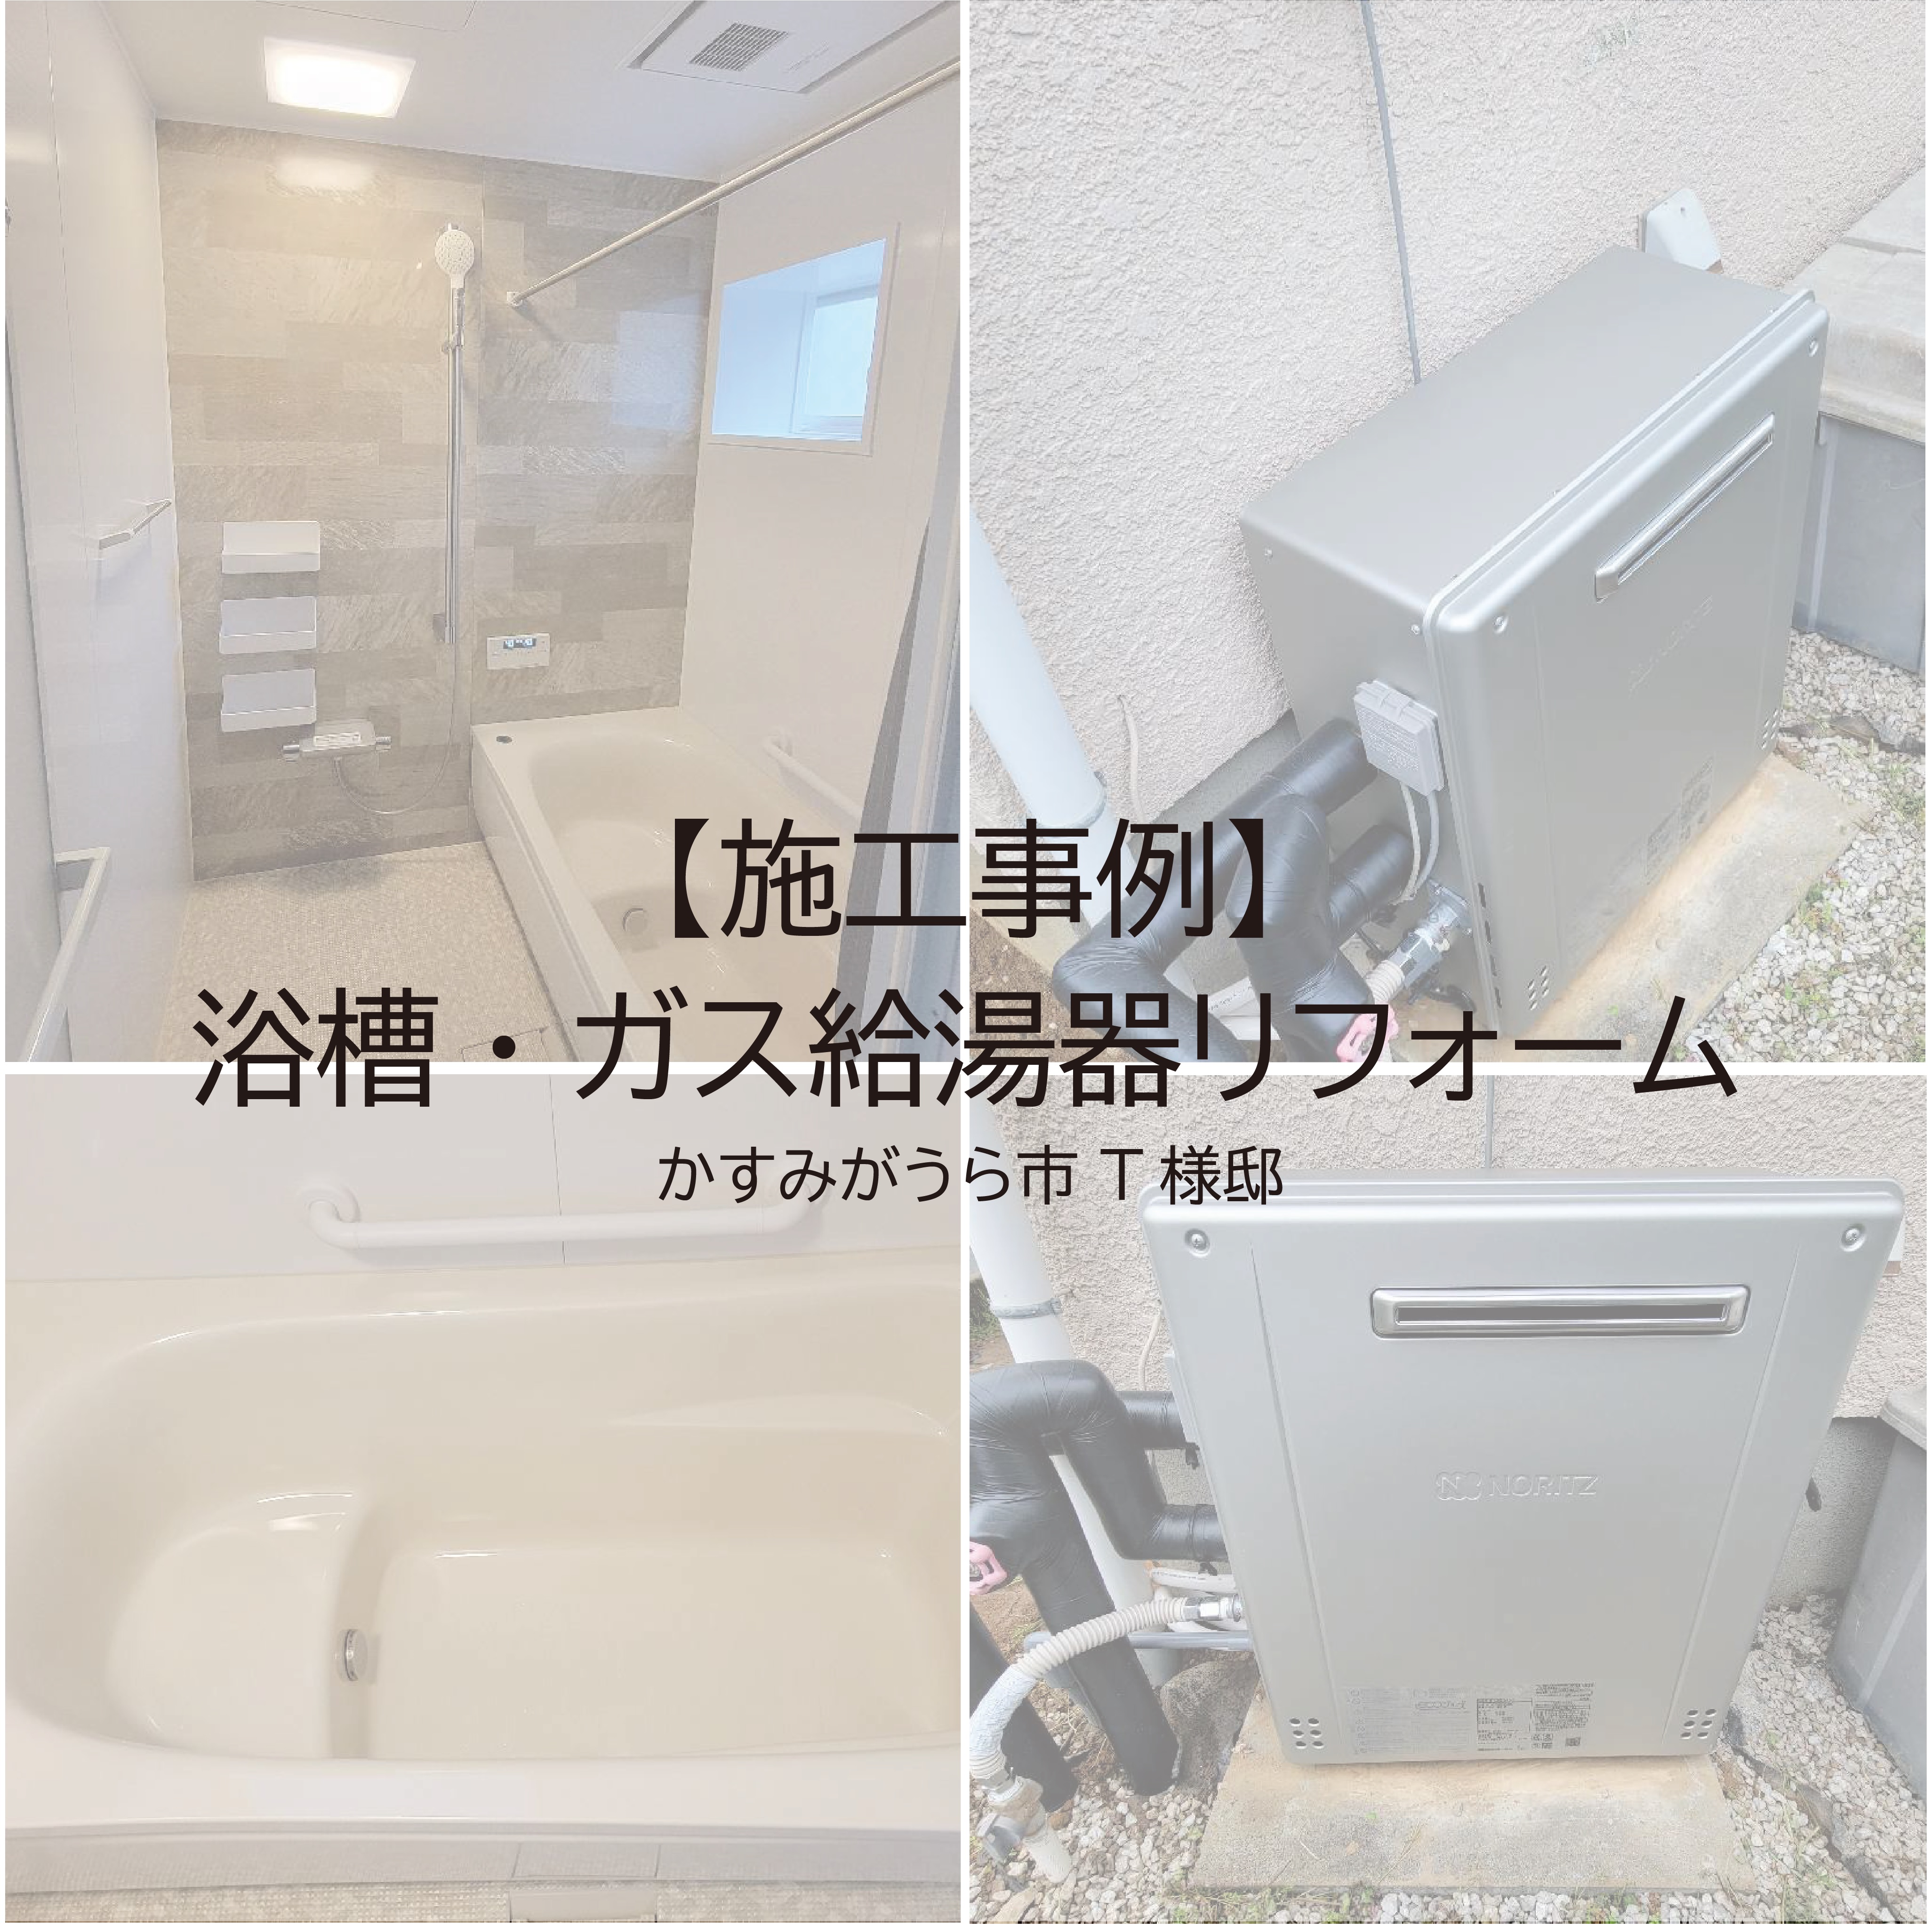 【リフォーム】浴槽・ガス給湯器リフォーム